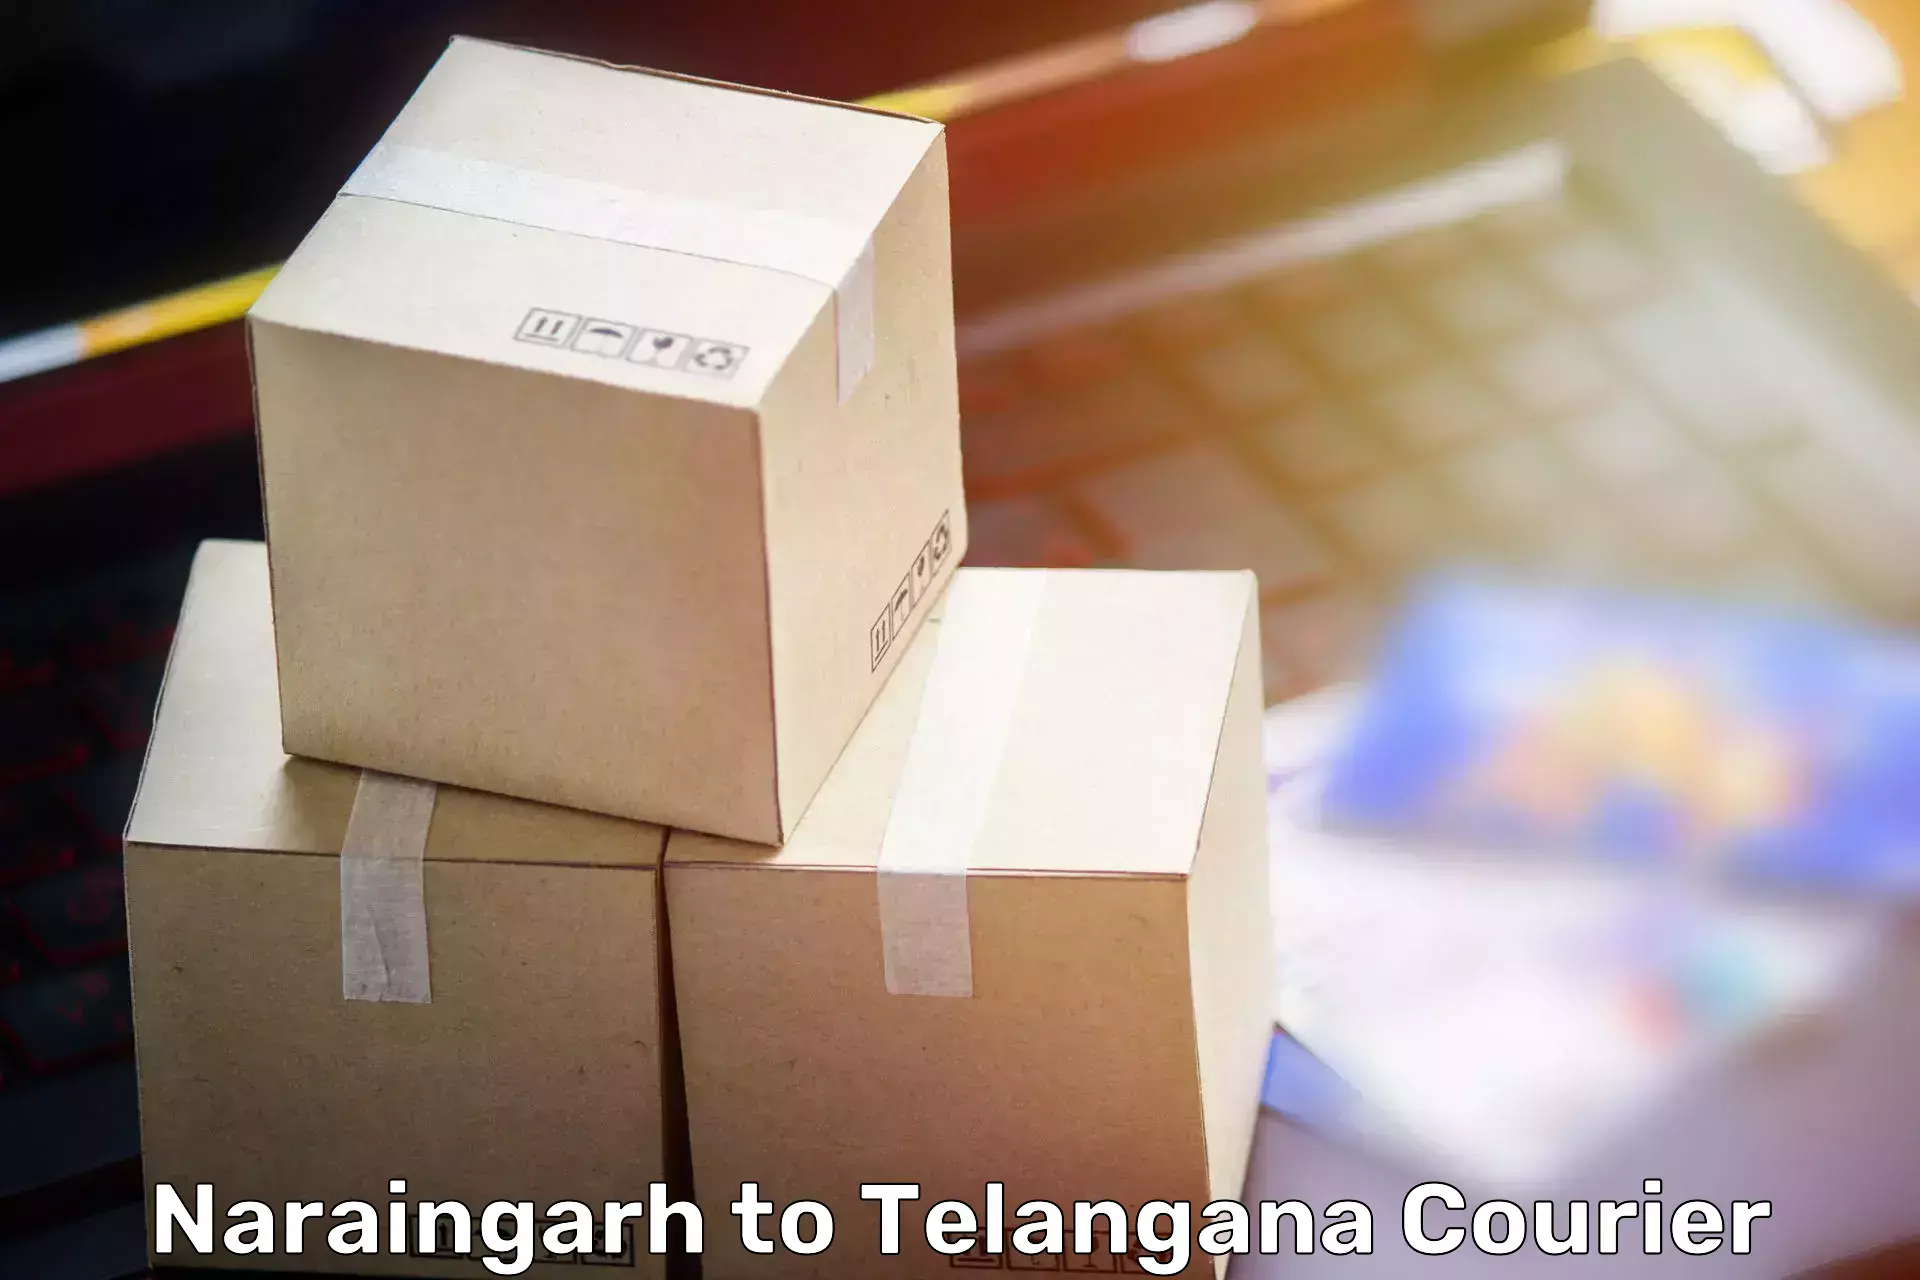 Furniture transport services Naraingarh to Tiryani